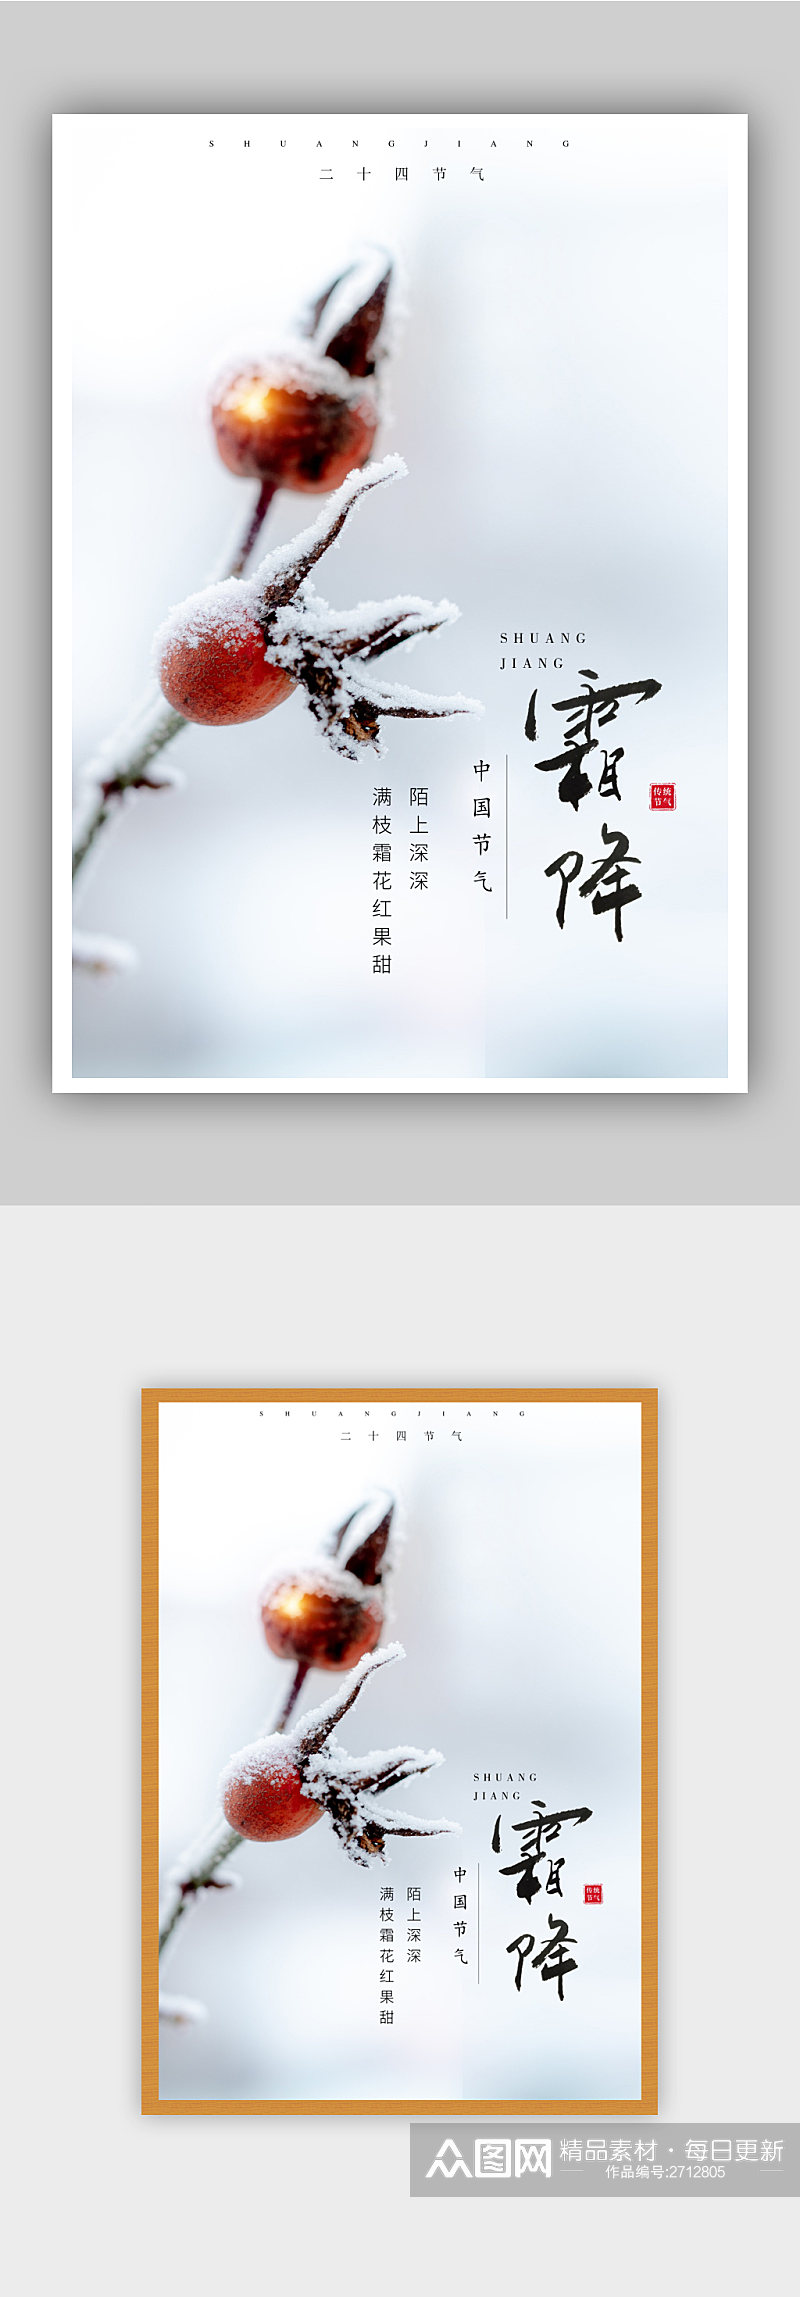 简约中国传统节气霜降海报素材